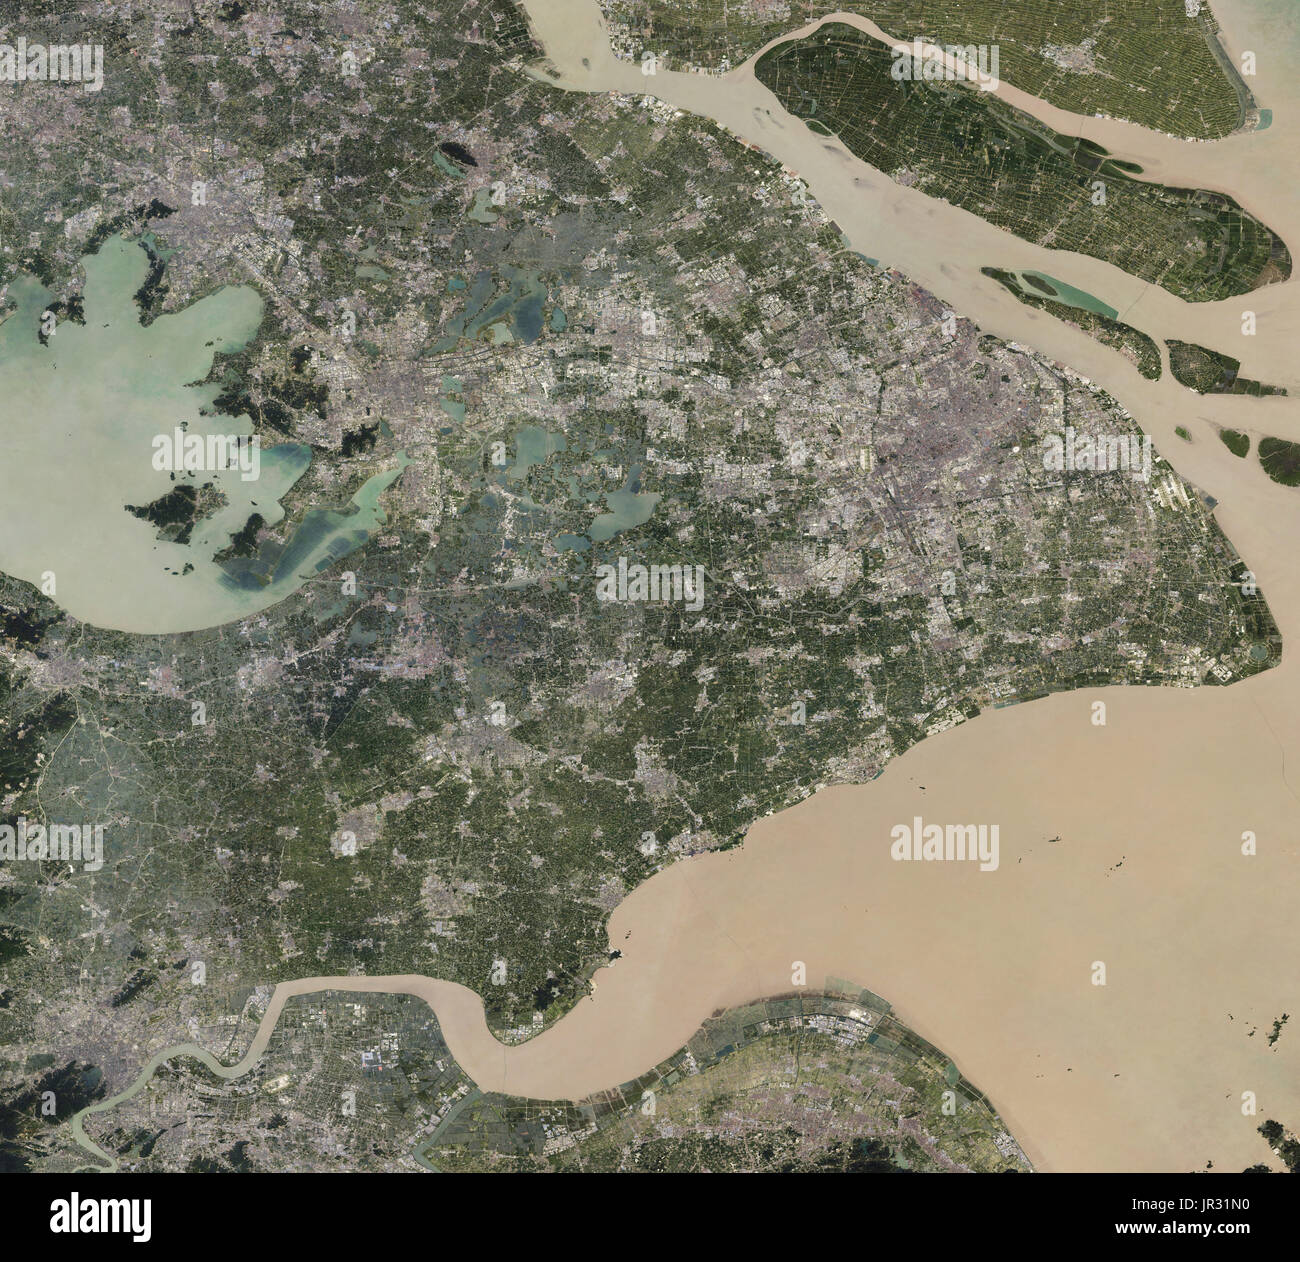 Shanghai, Cina, catturata dalla terra operative imager (OLI) sul satellite Landsat 8 tra il 2013 e il 2017. Confronta con jg5370, che mostra la Shanghai dalla fine degli anni ottanta. Foto Stock